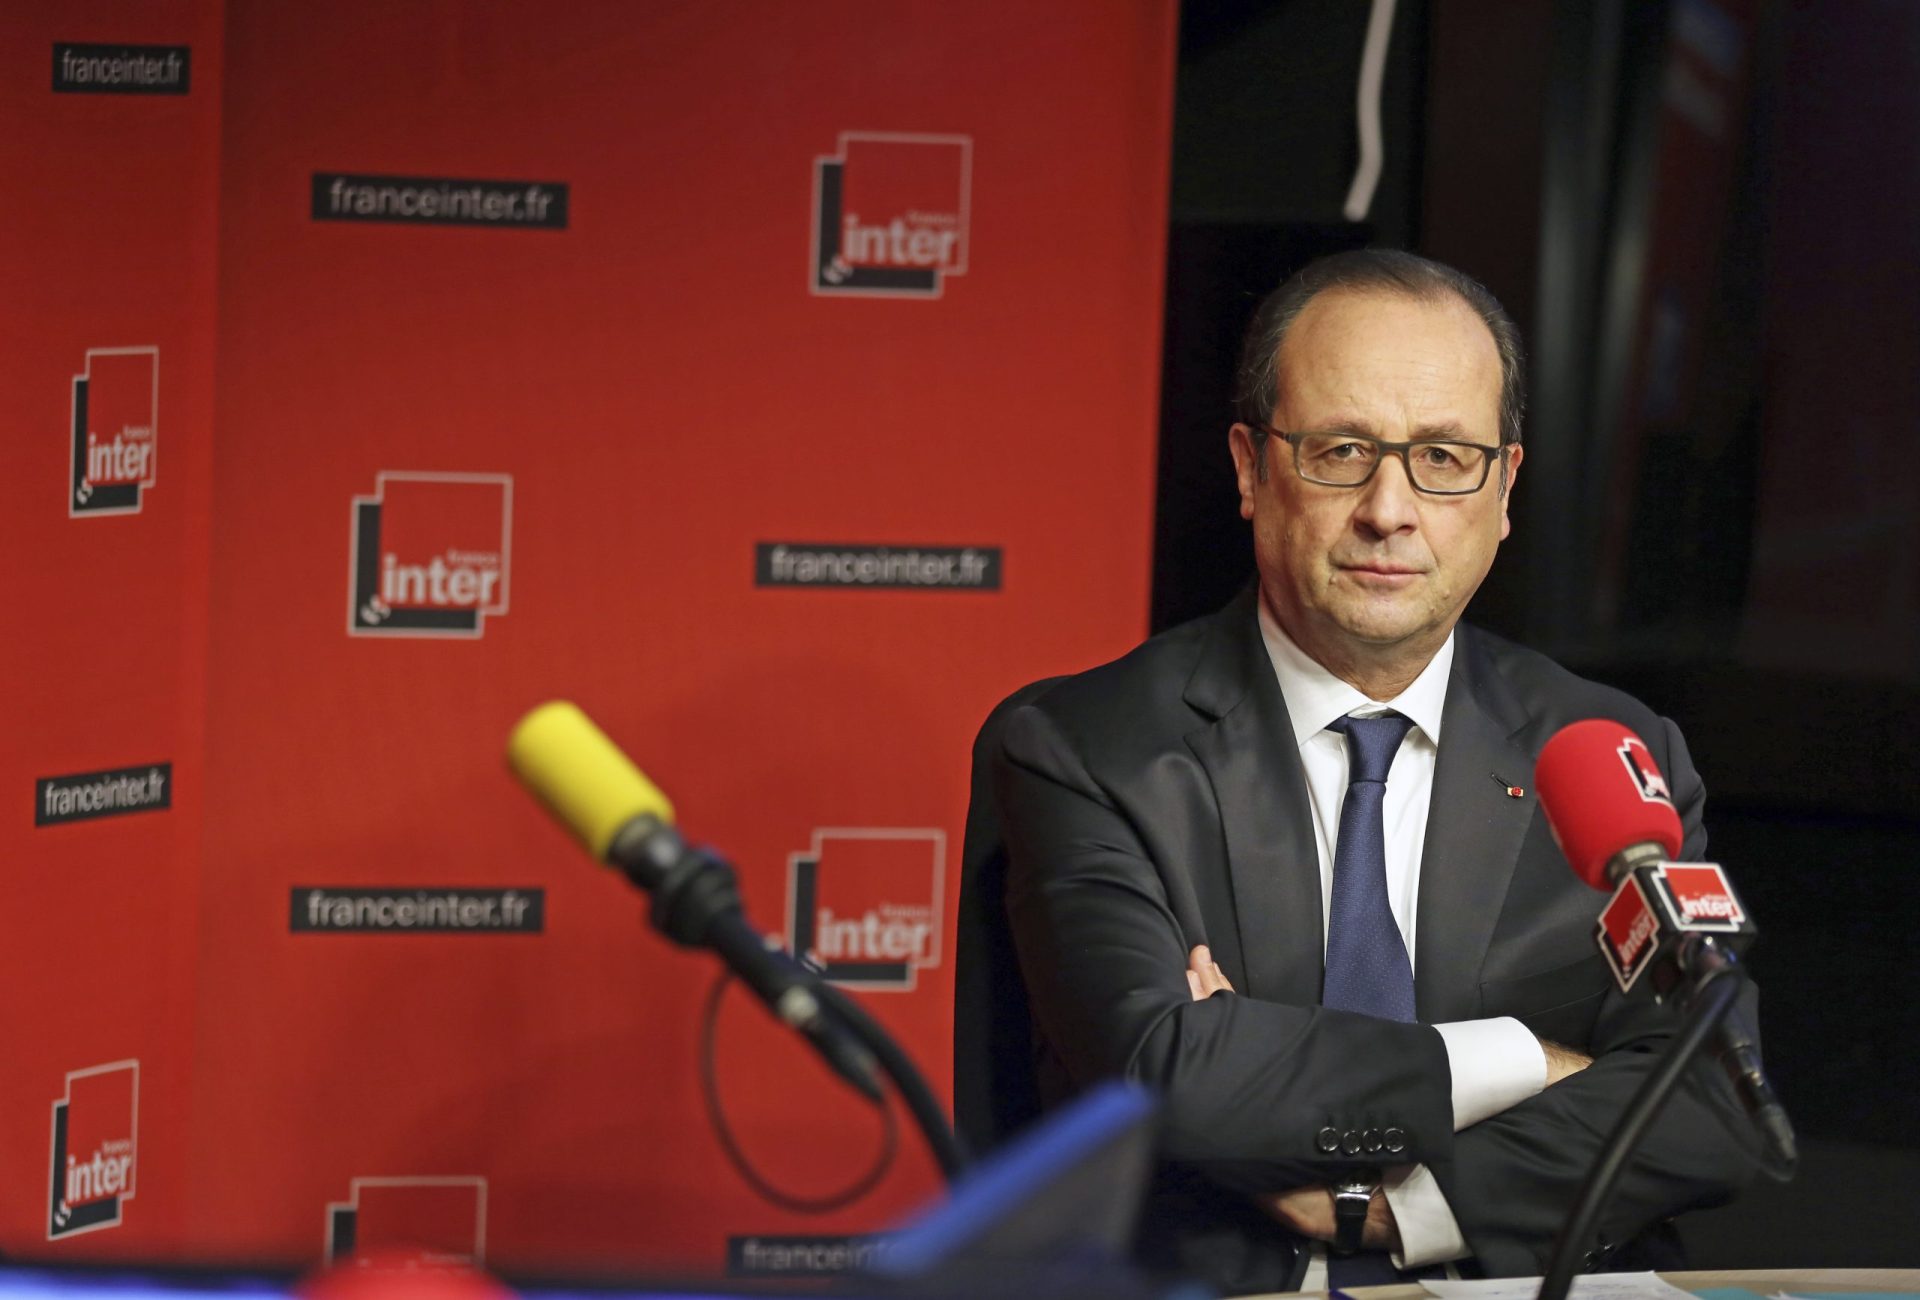 Governo francês considera ‘inaceitável’ espionagem entre aliados